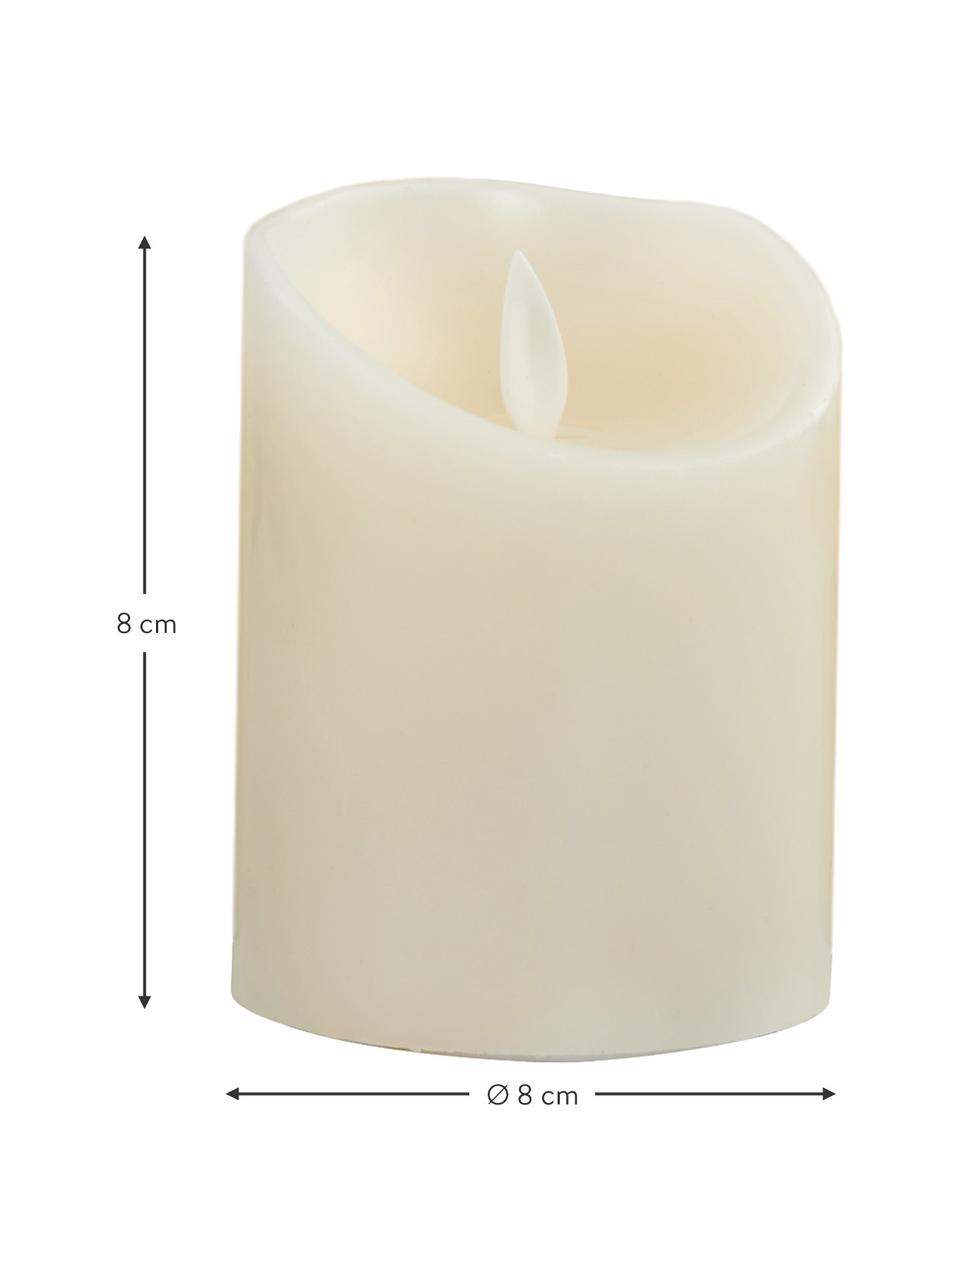 3x LED LENSER Zweibrüder Candle in the Tealight 7781 Led-Kerze Kerze im Teelicht 